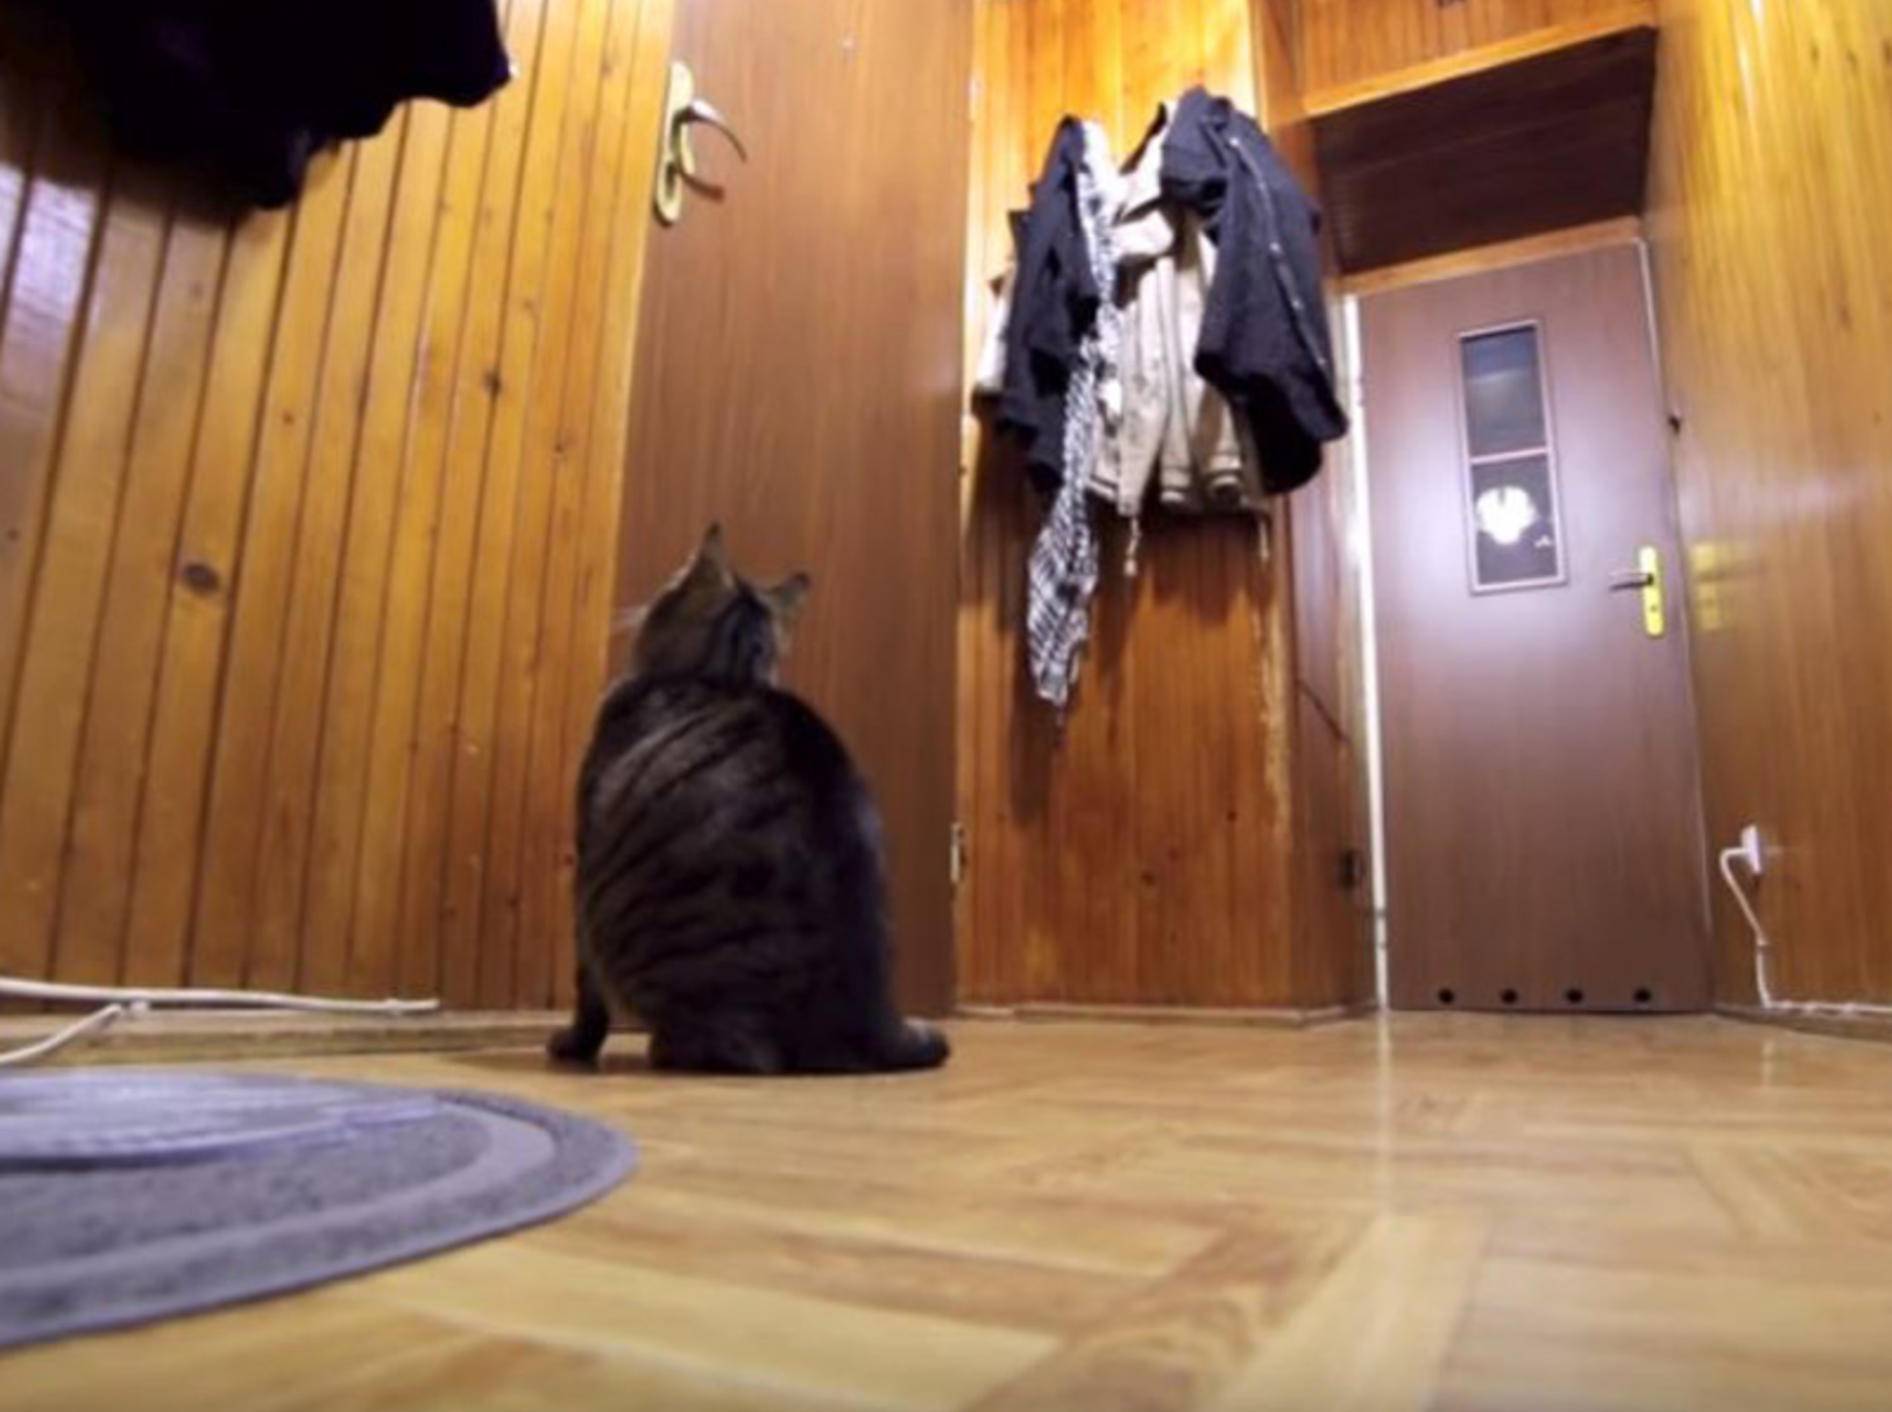 Diese Katze kann es kaum erwarten, dass Herrchen wieder nach Hause kommt - Bild: YouTube / Krzysztof Smeijlis